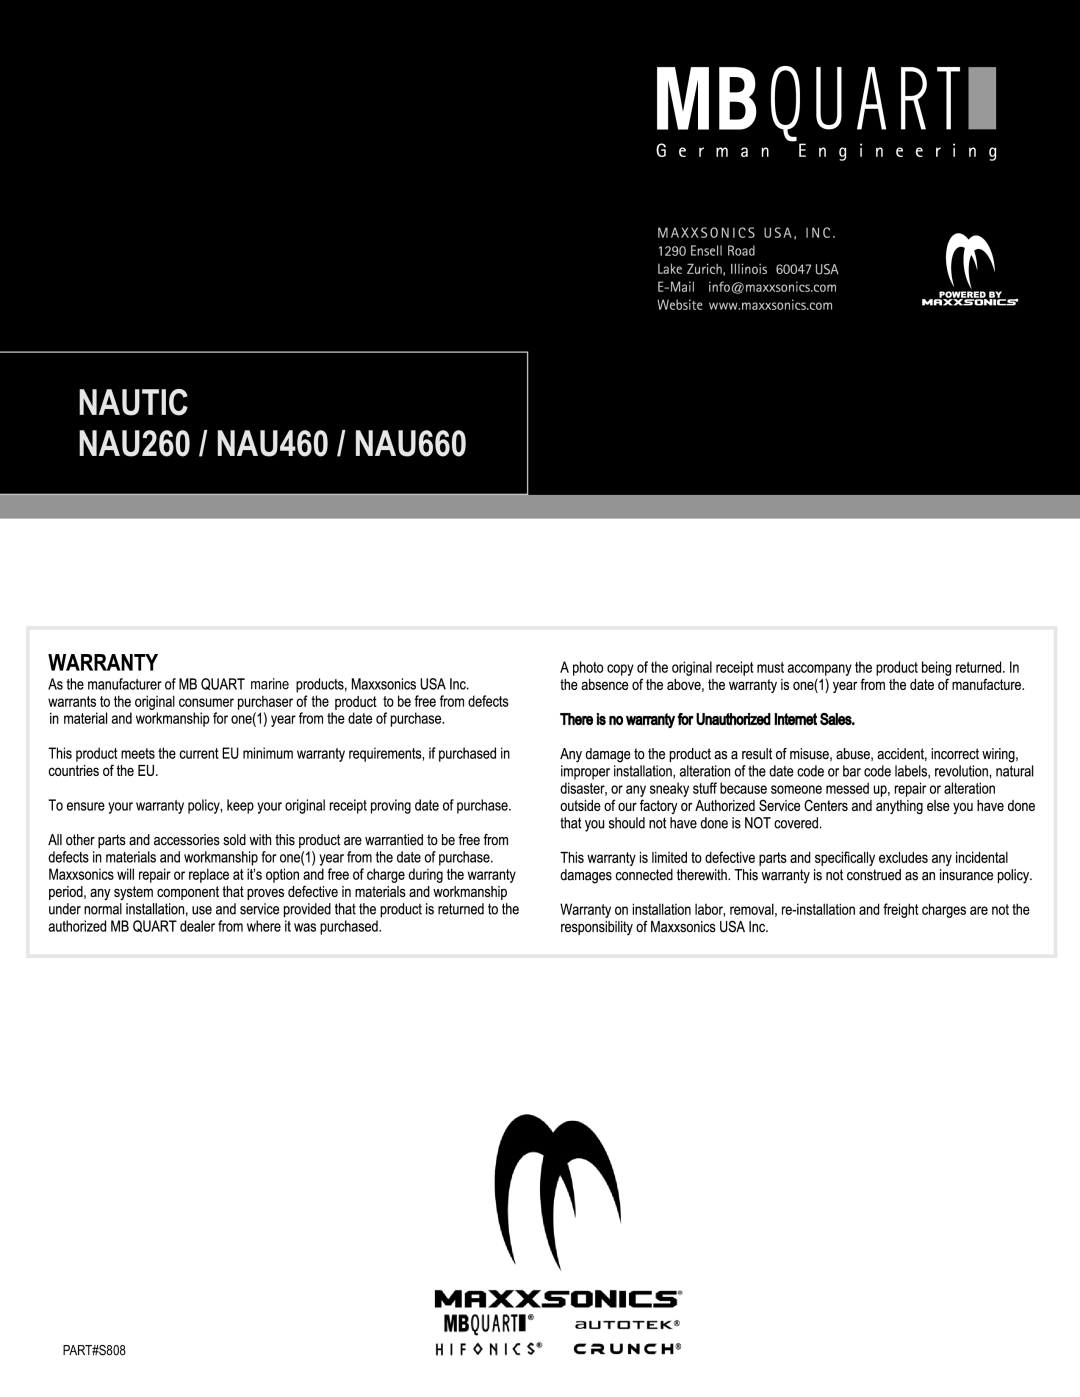 MB QUART installation manual NAUTIC NAU260 / NAU460 / NAU660, marine, PART#S808 